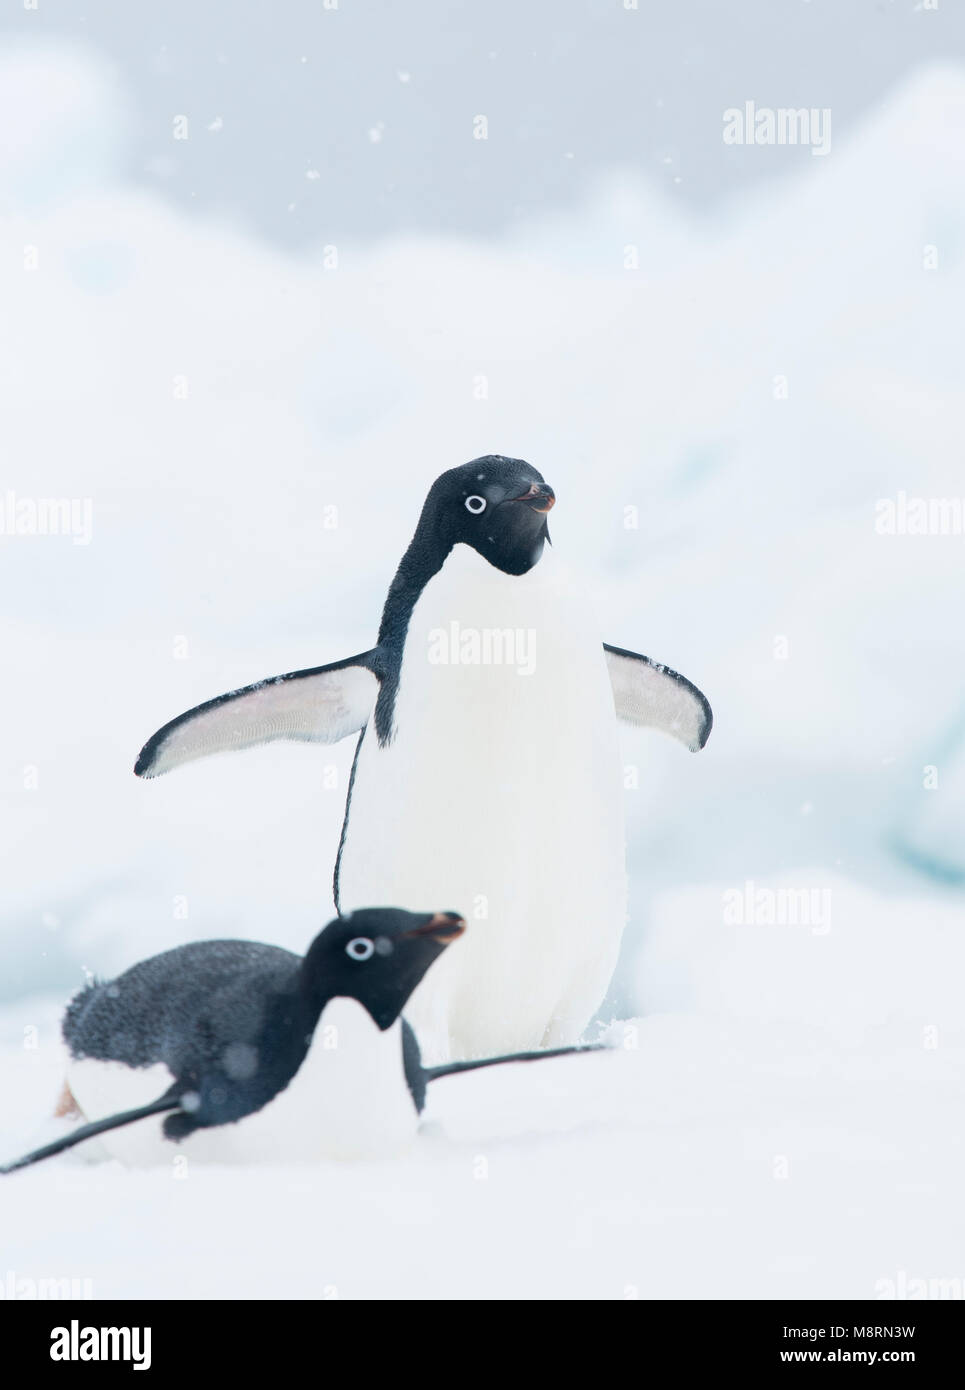 La nieve cae en dos pingüinos Adelia en un témpano de hielo en la Antártida. Foto de stock